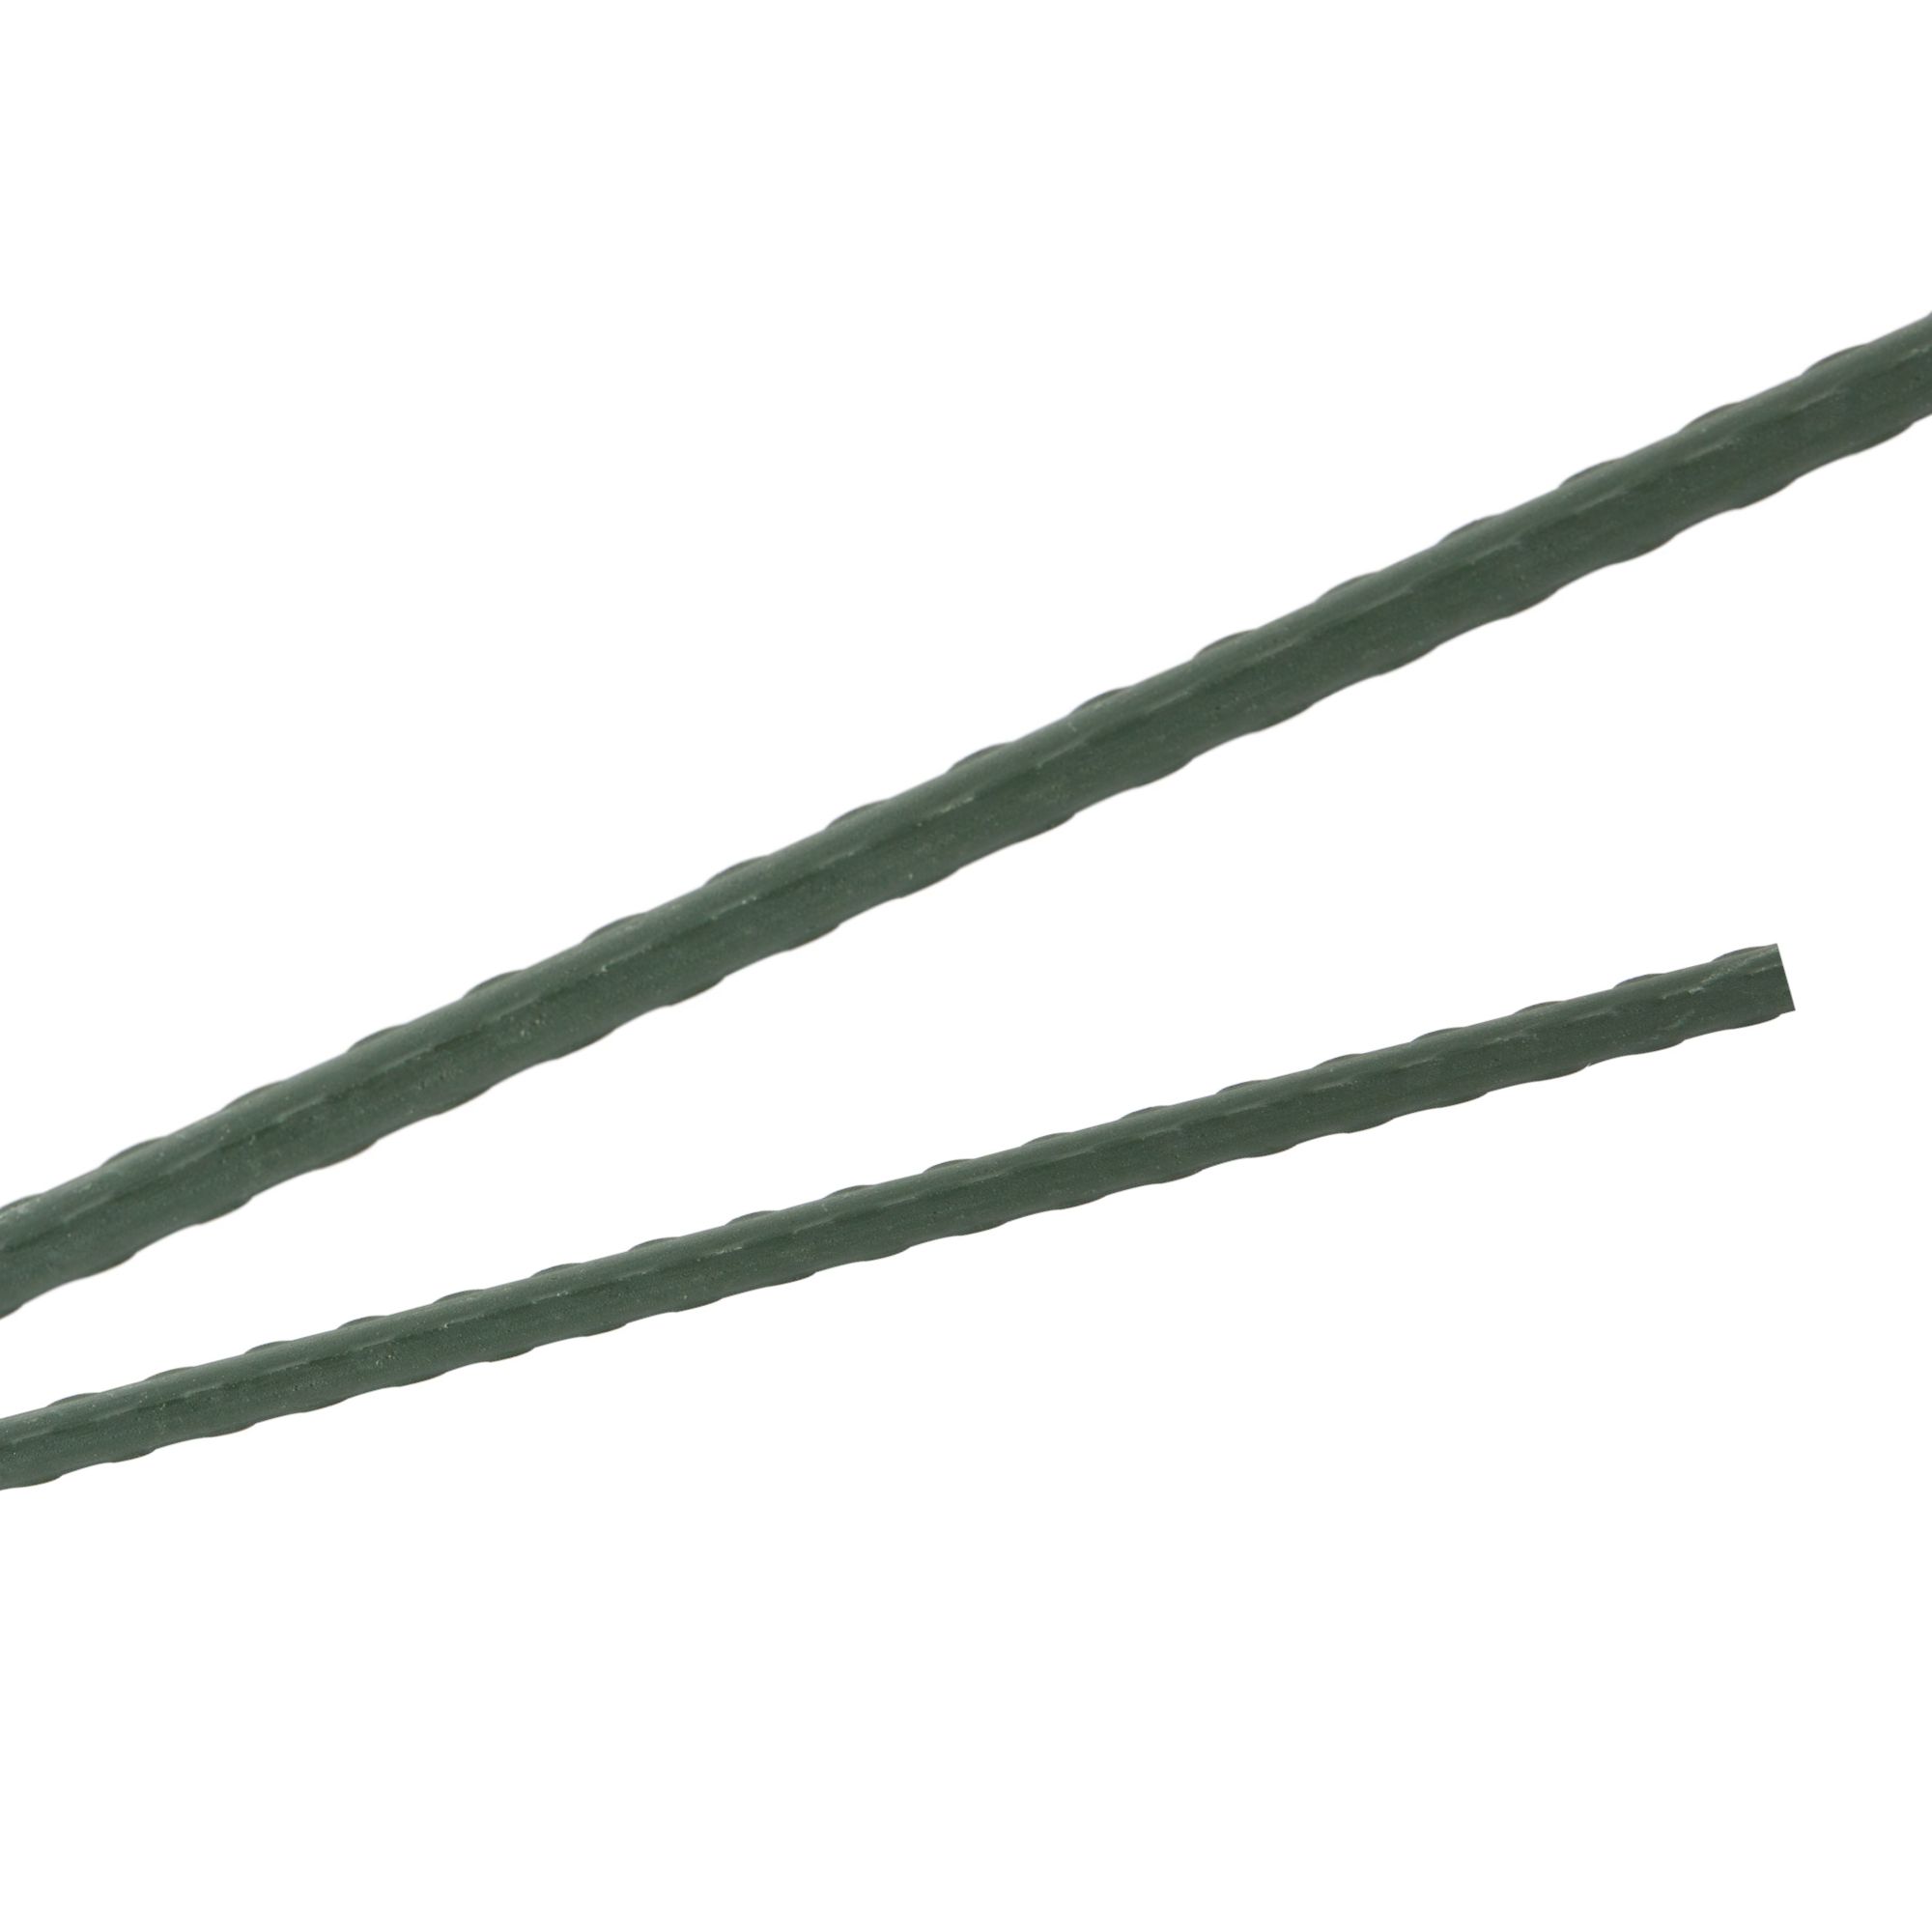 Tyč podpěrná, 20mm, 150cm, kov+PVC, zelená 0.280000 Kg GIGA Sklad20 211769 117